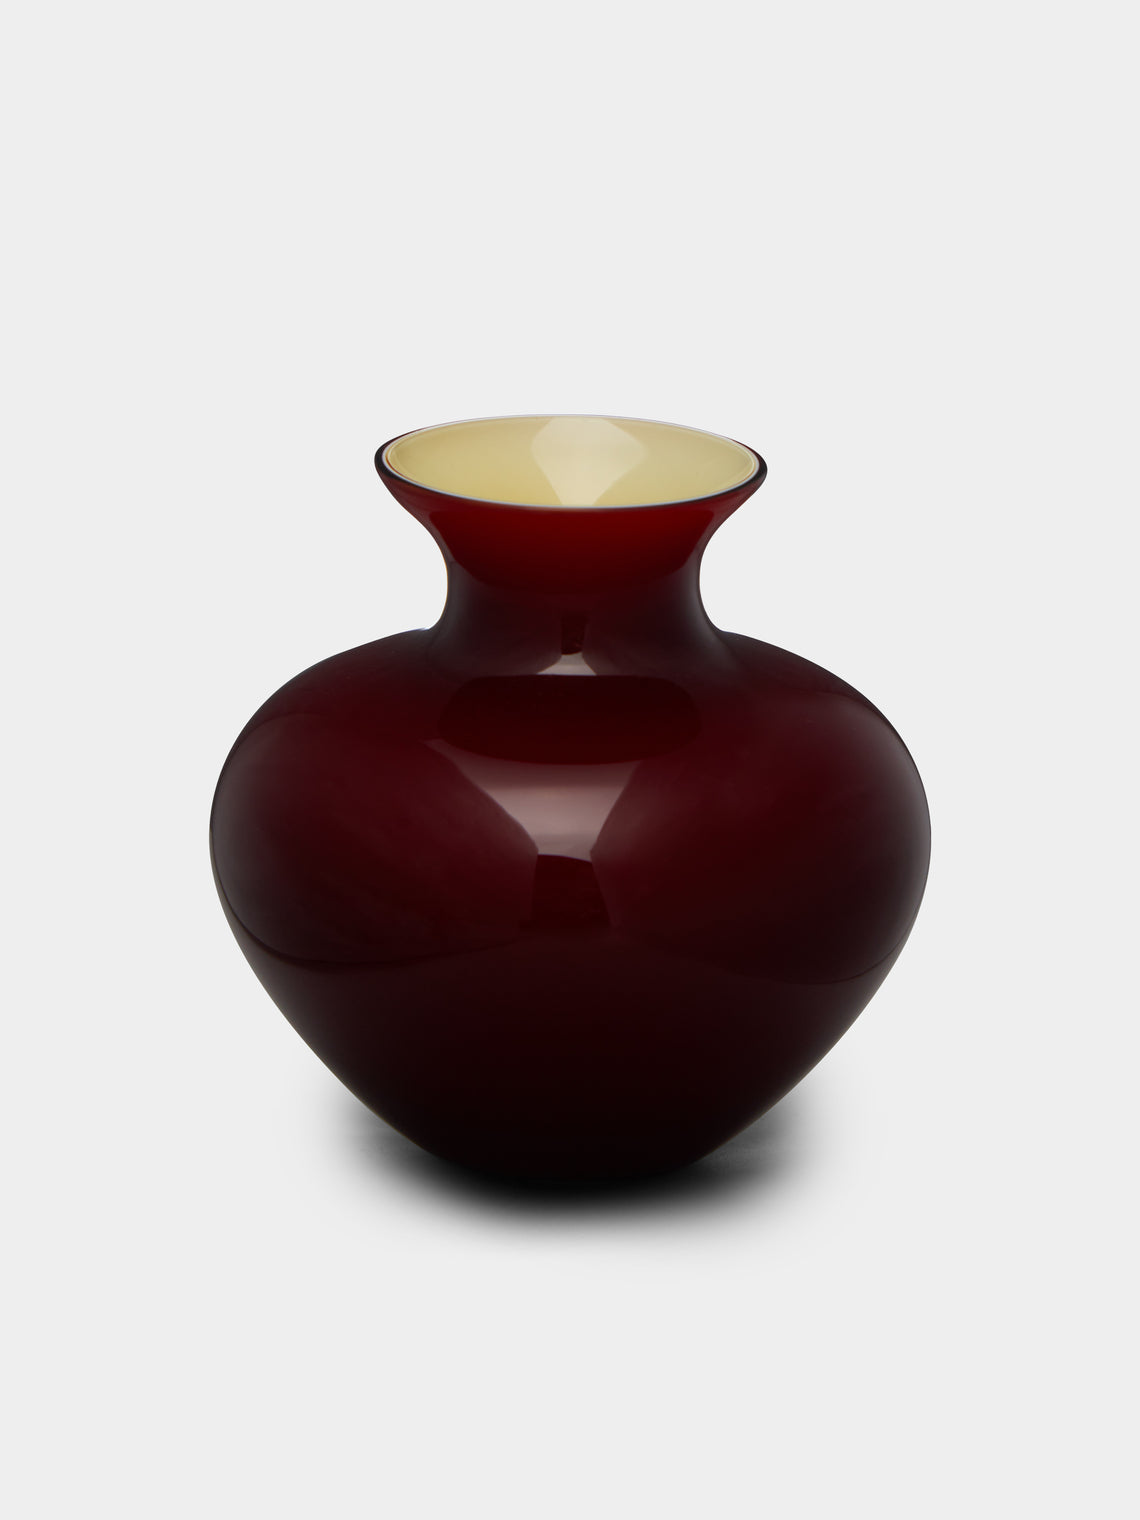 NasonMoretti - Antares Hand-Blown Murano Glass Bud Vase -  - ABASK - 